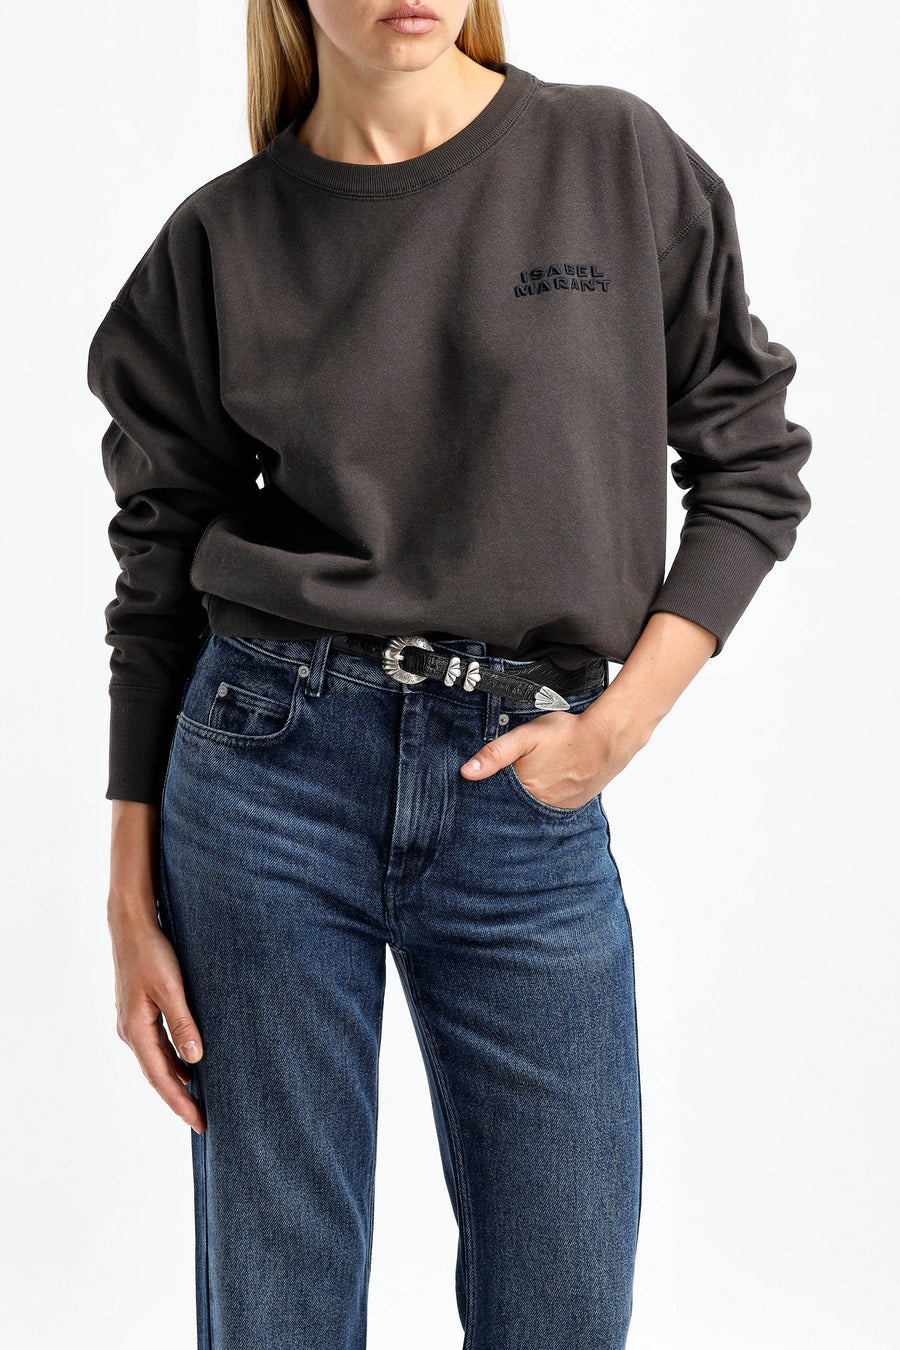 Sweatshirt Shad in Faded BlackIsabel Marant - Anita Hass